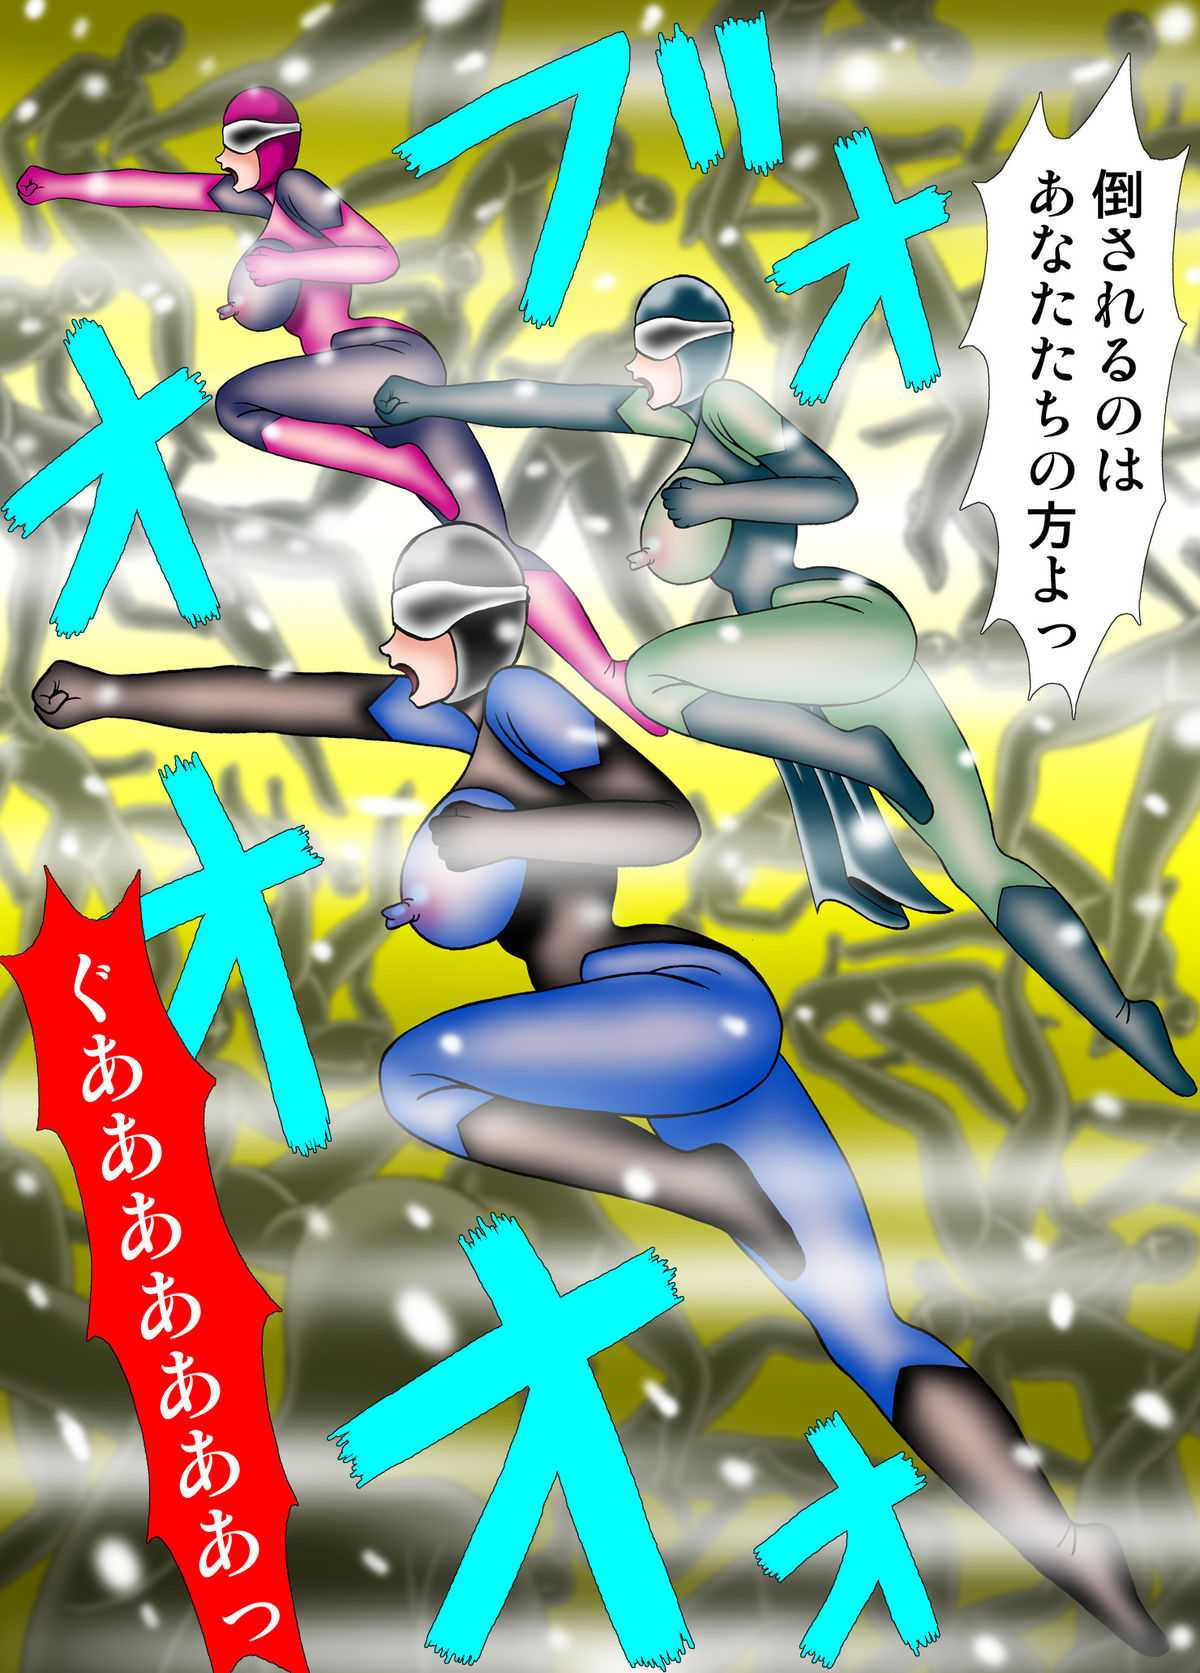 [Kesshousui] Kiyoshi Onna Sentai Buru Mariasu 4 - Sennou isu no Kei | Innocence Squadron - Blue Marias 4 (Original) [Digital] [結晶水] 清女戦隊ブルーマリアス4 洗脳イスの刑 DL版 (オリジナル) [RJ073104]